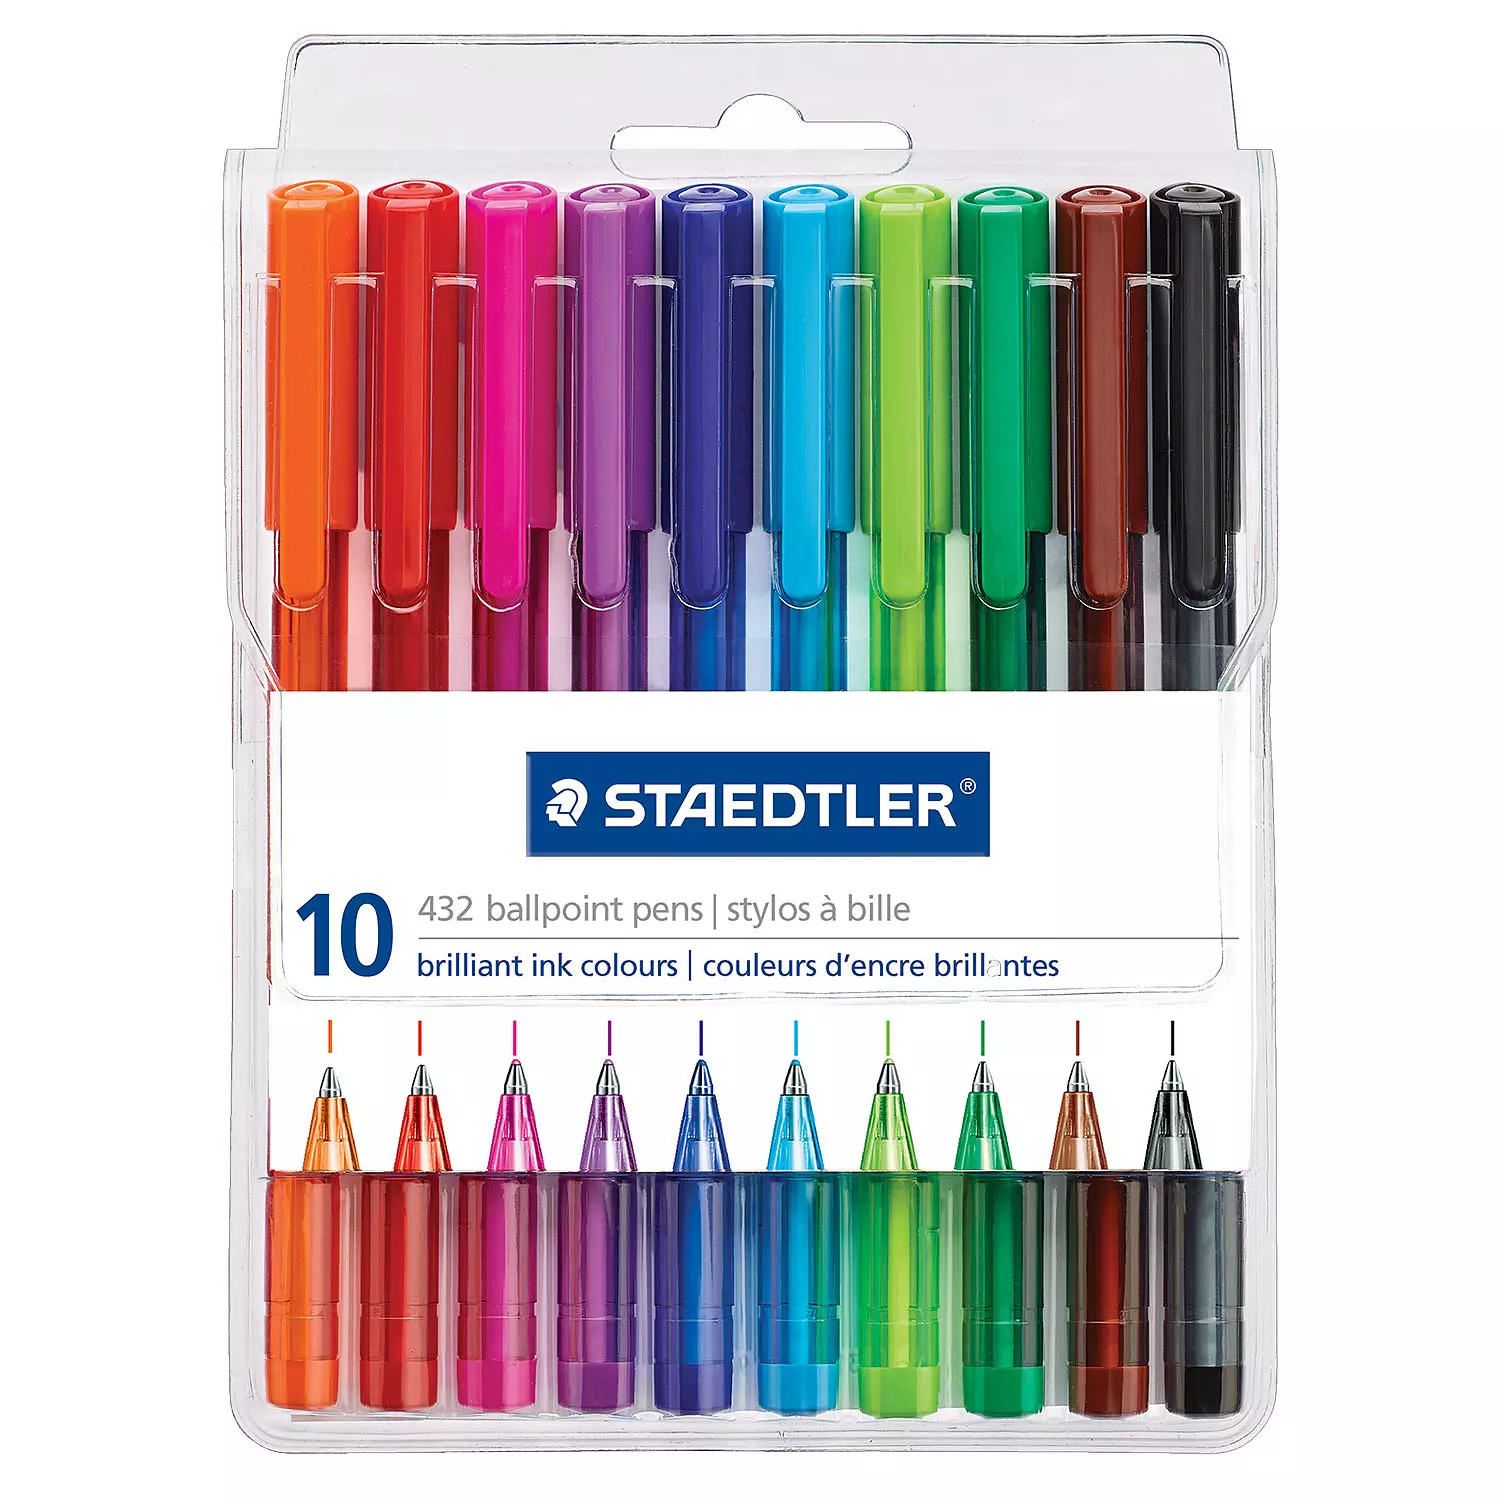 Staedtler - 10 stylos à bille en couleurs d'encre brillantes